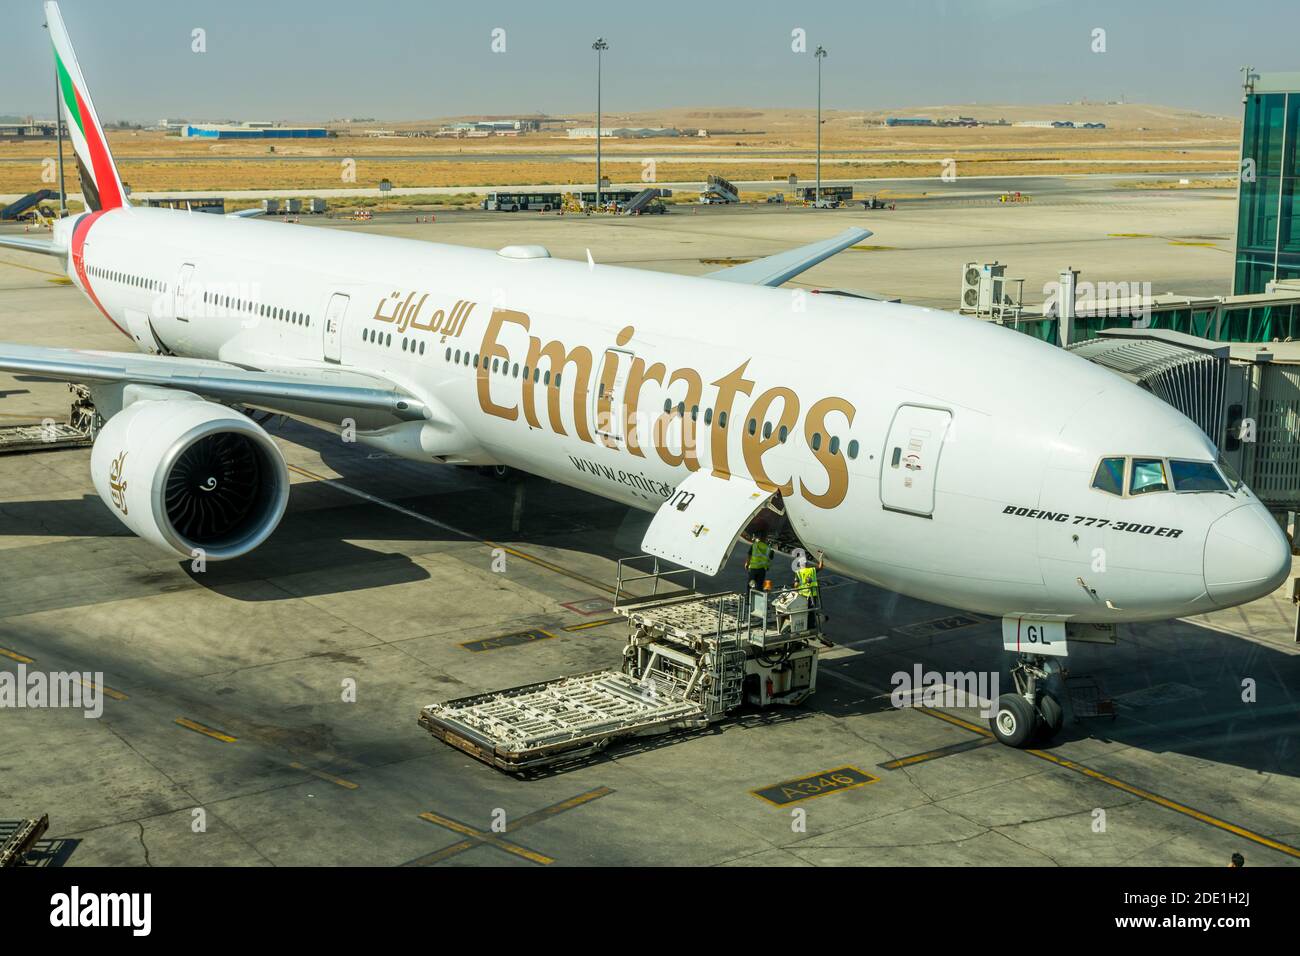 Flugzeug der Emirates Airlines am Flugsteig des Queen Alia International  Airport (QAIA) in amman Jordanien Stockfotografie - Alamy